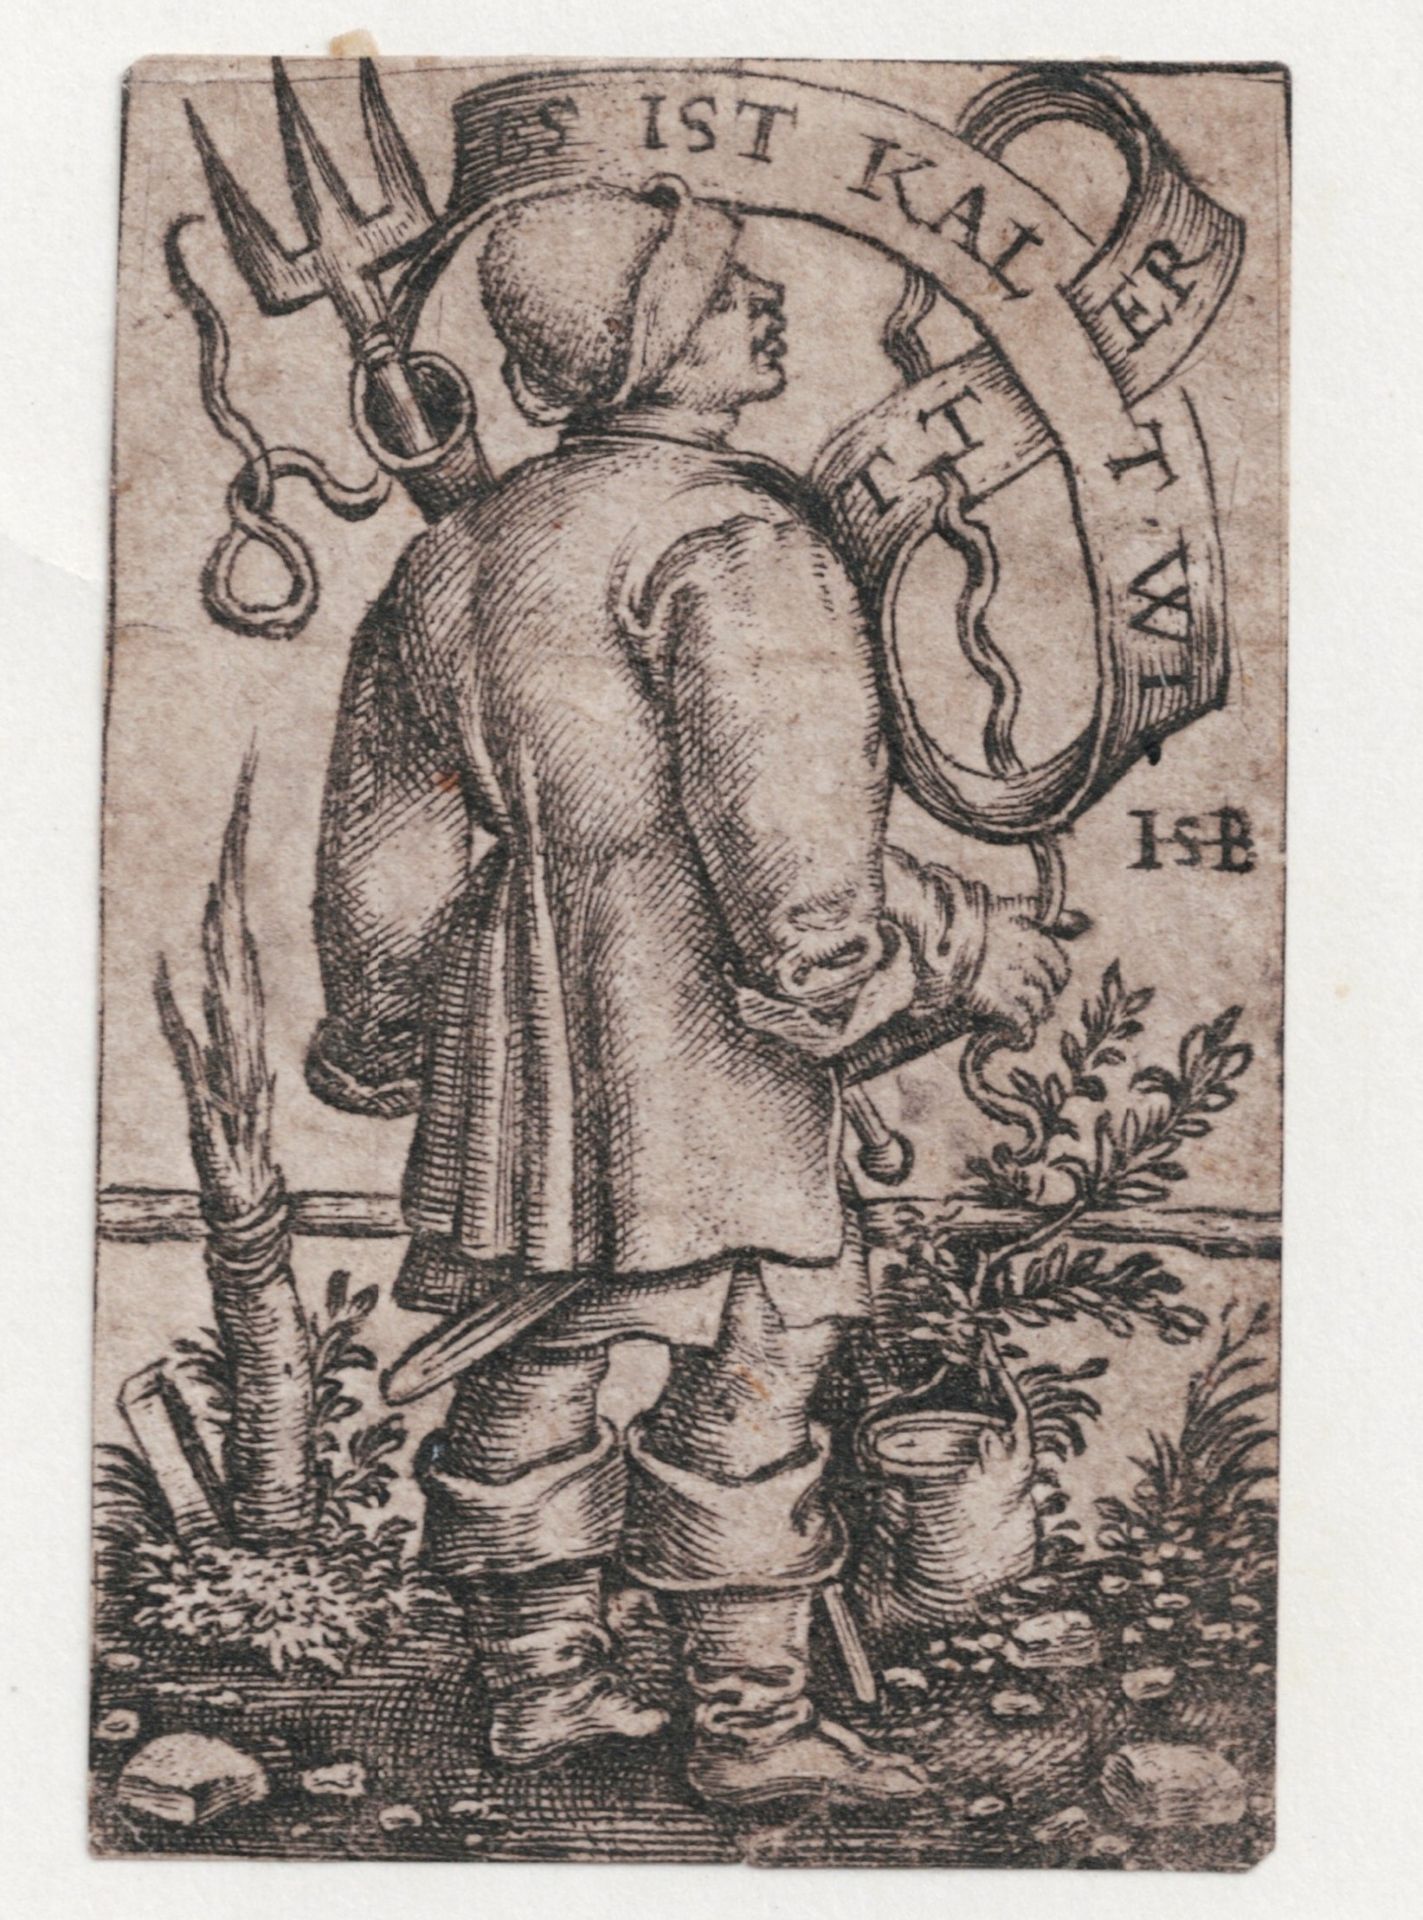 After Hans Sebald Beham (1500-1550)